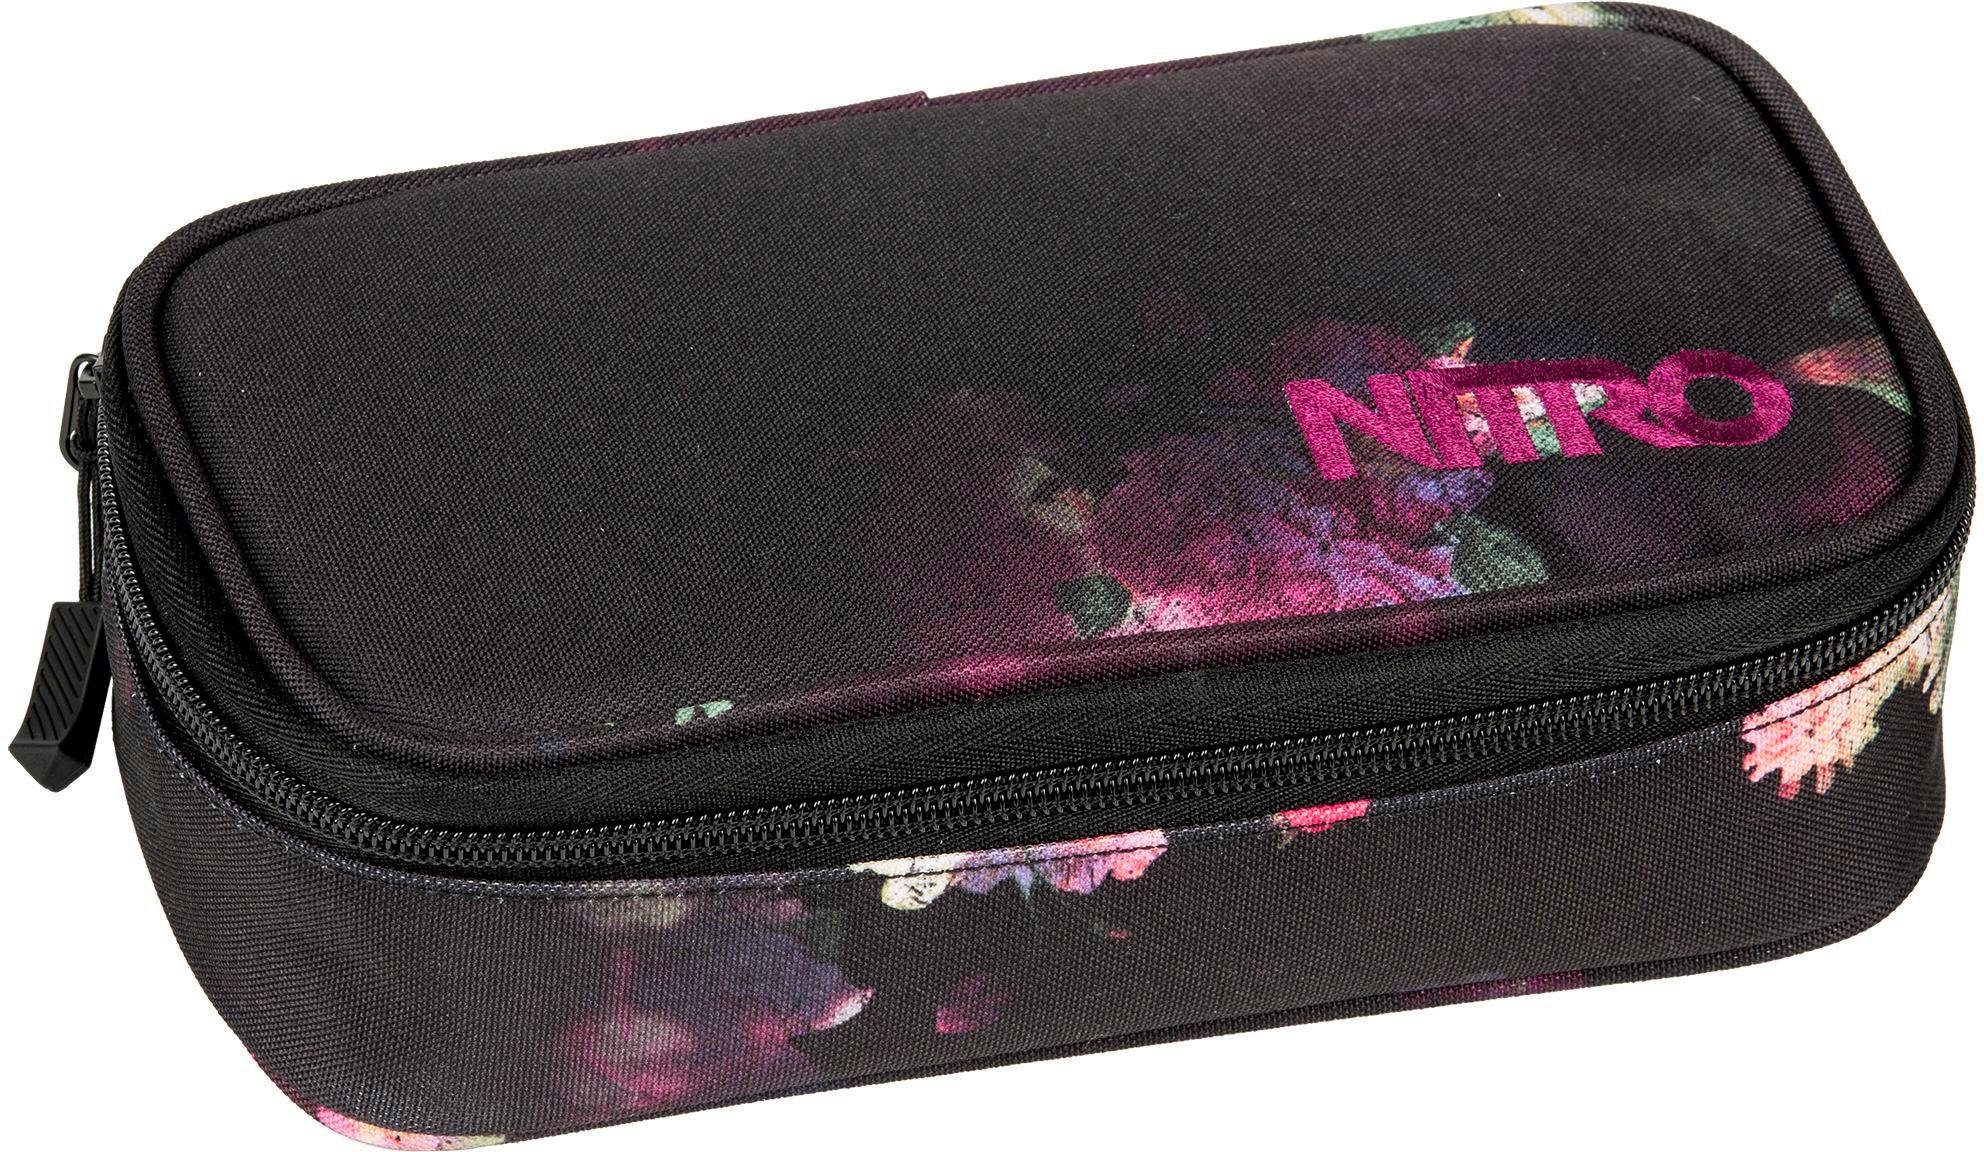 Nitro etui met inhoud, Pencil Case XL Black Rose